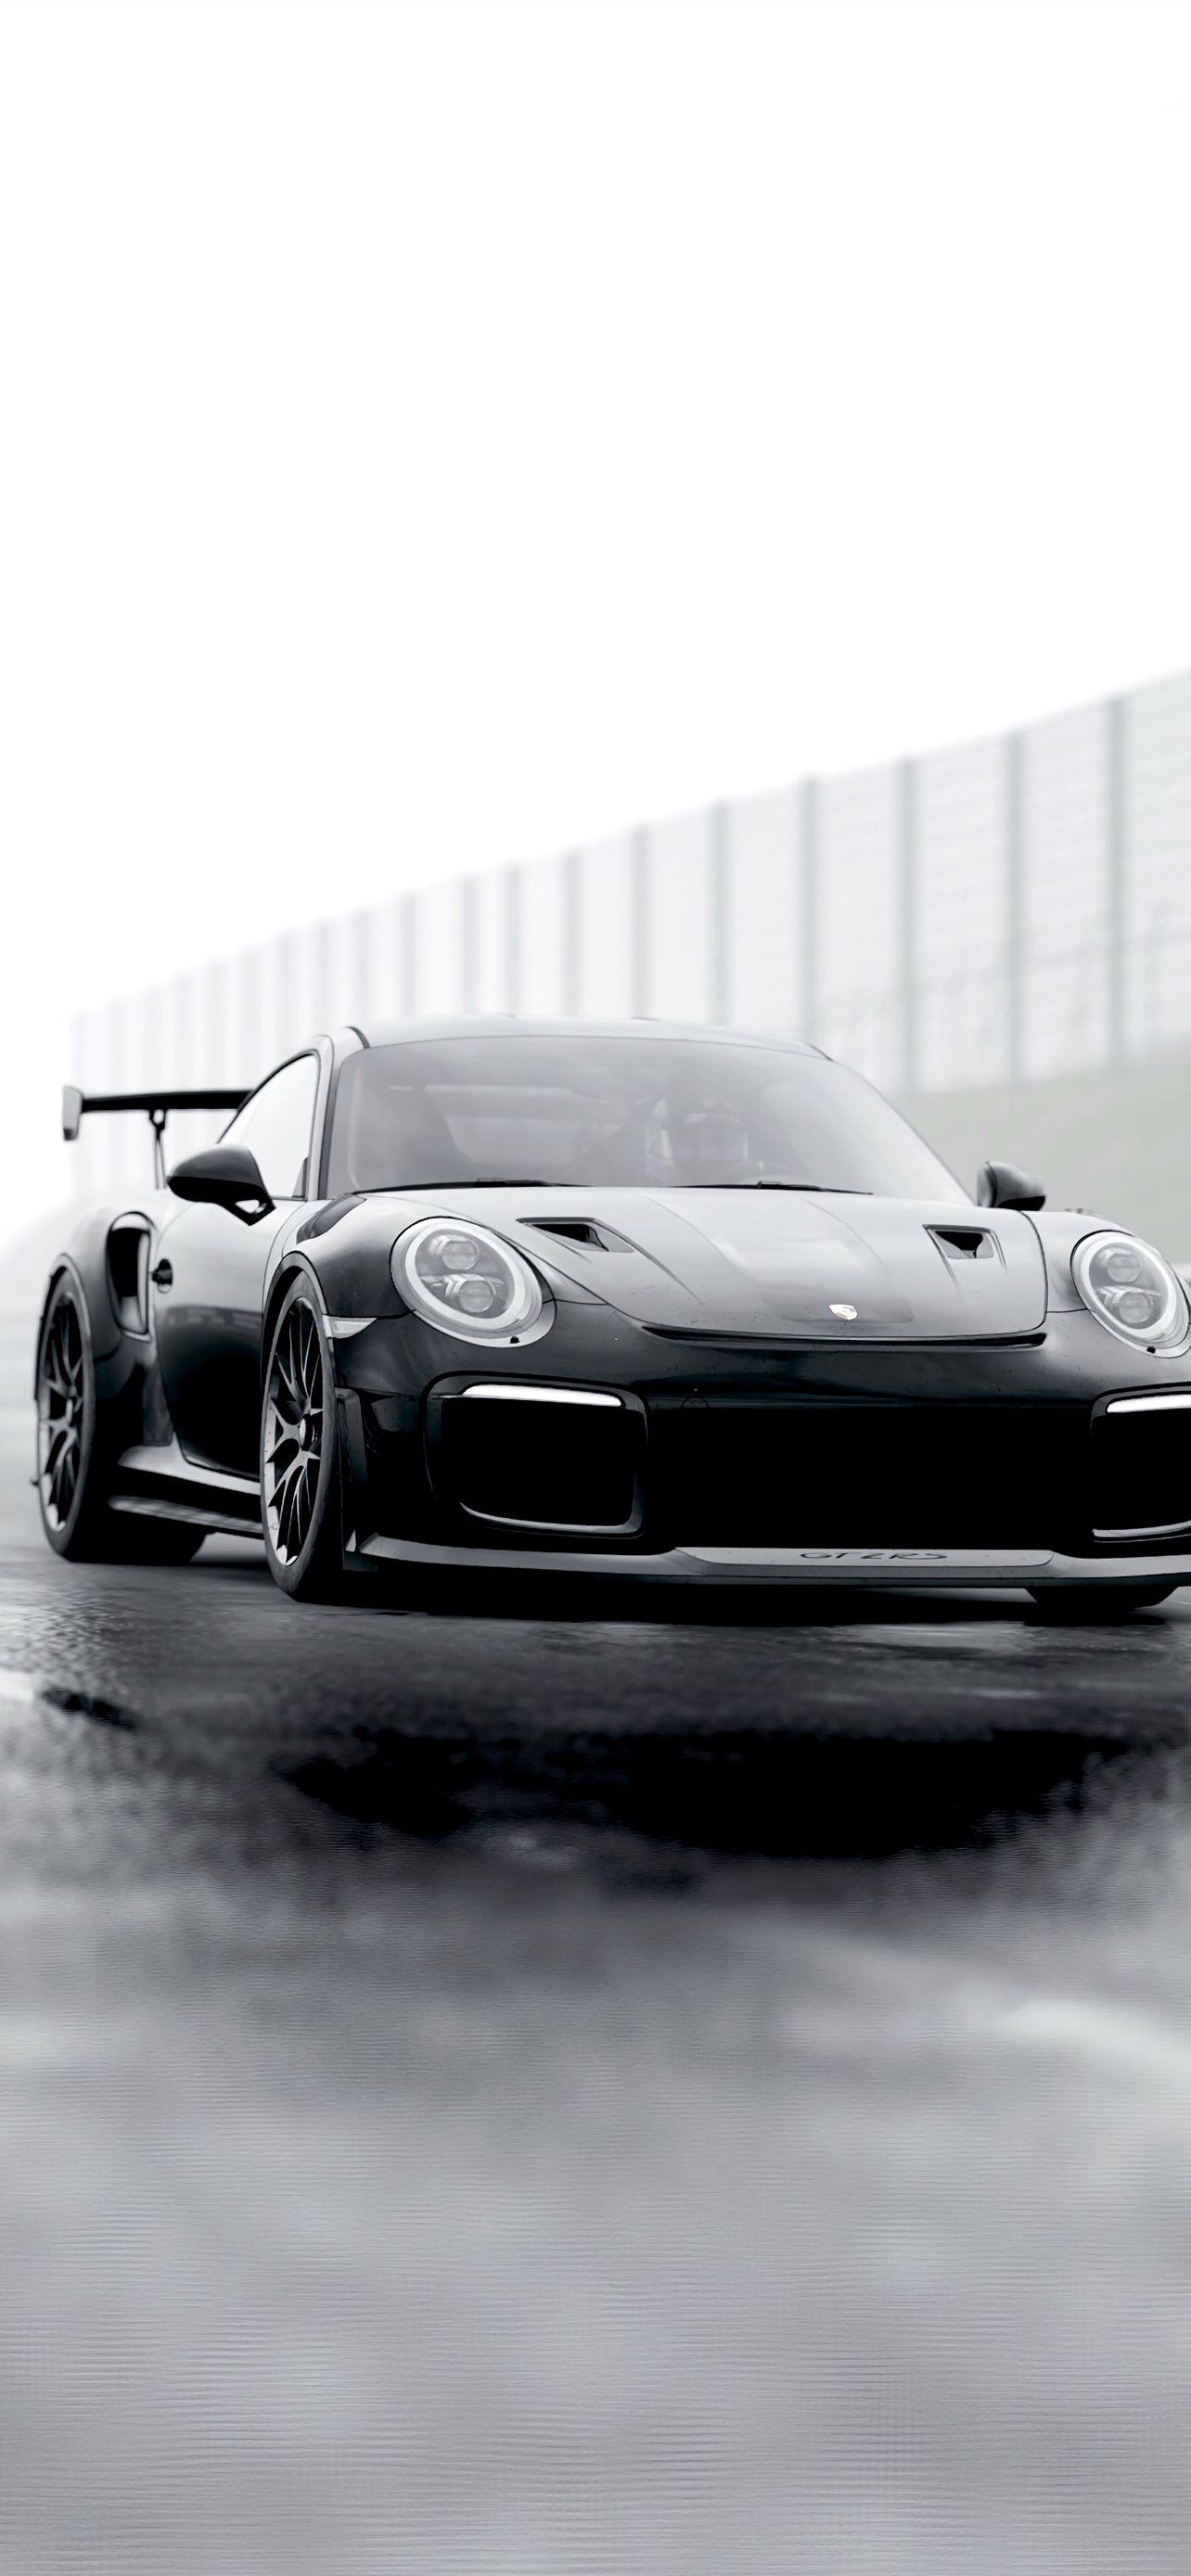 Porsche Hintergrundbild 1284x2778. Best Porsche carrera gt iPhone HD Wallpaper